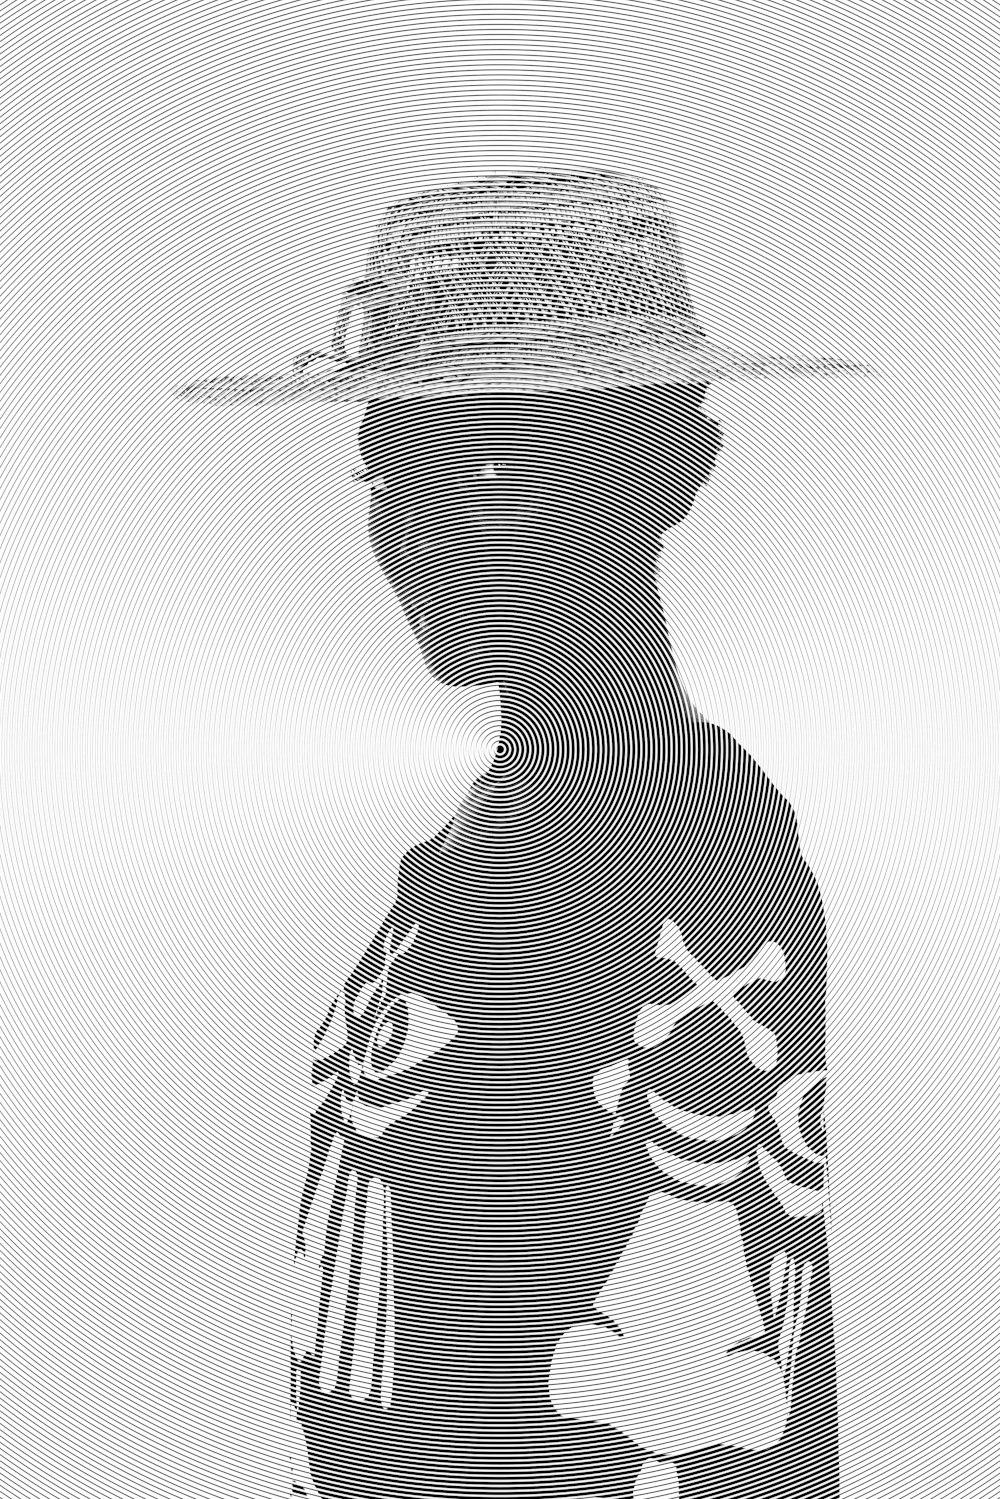 Una foto en blanco y negro de una persona con un sombrero